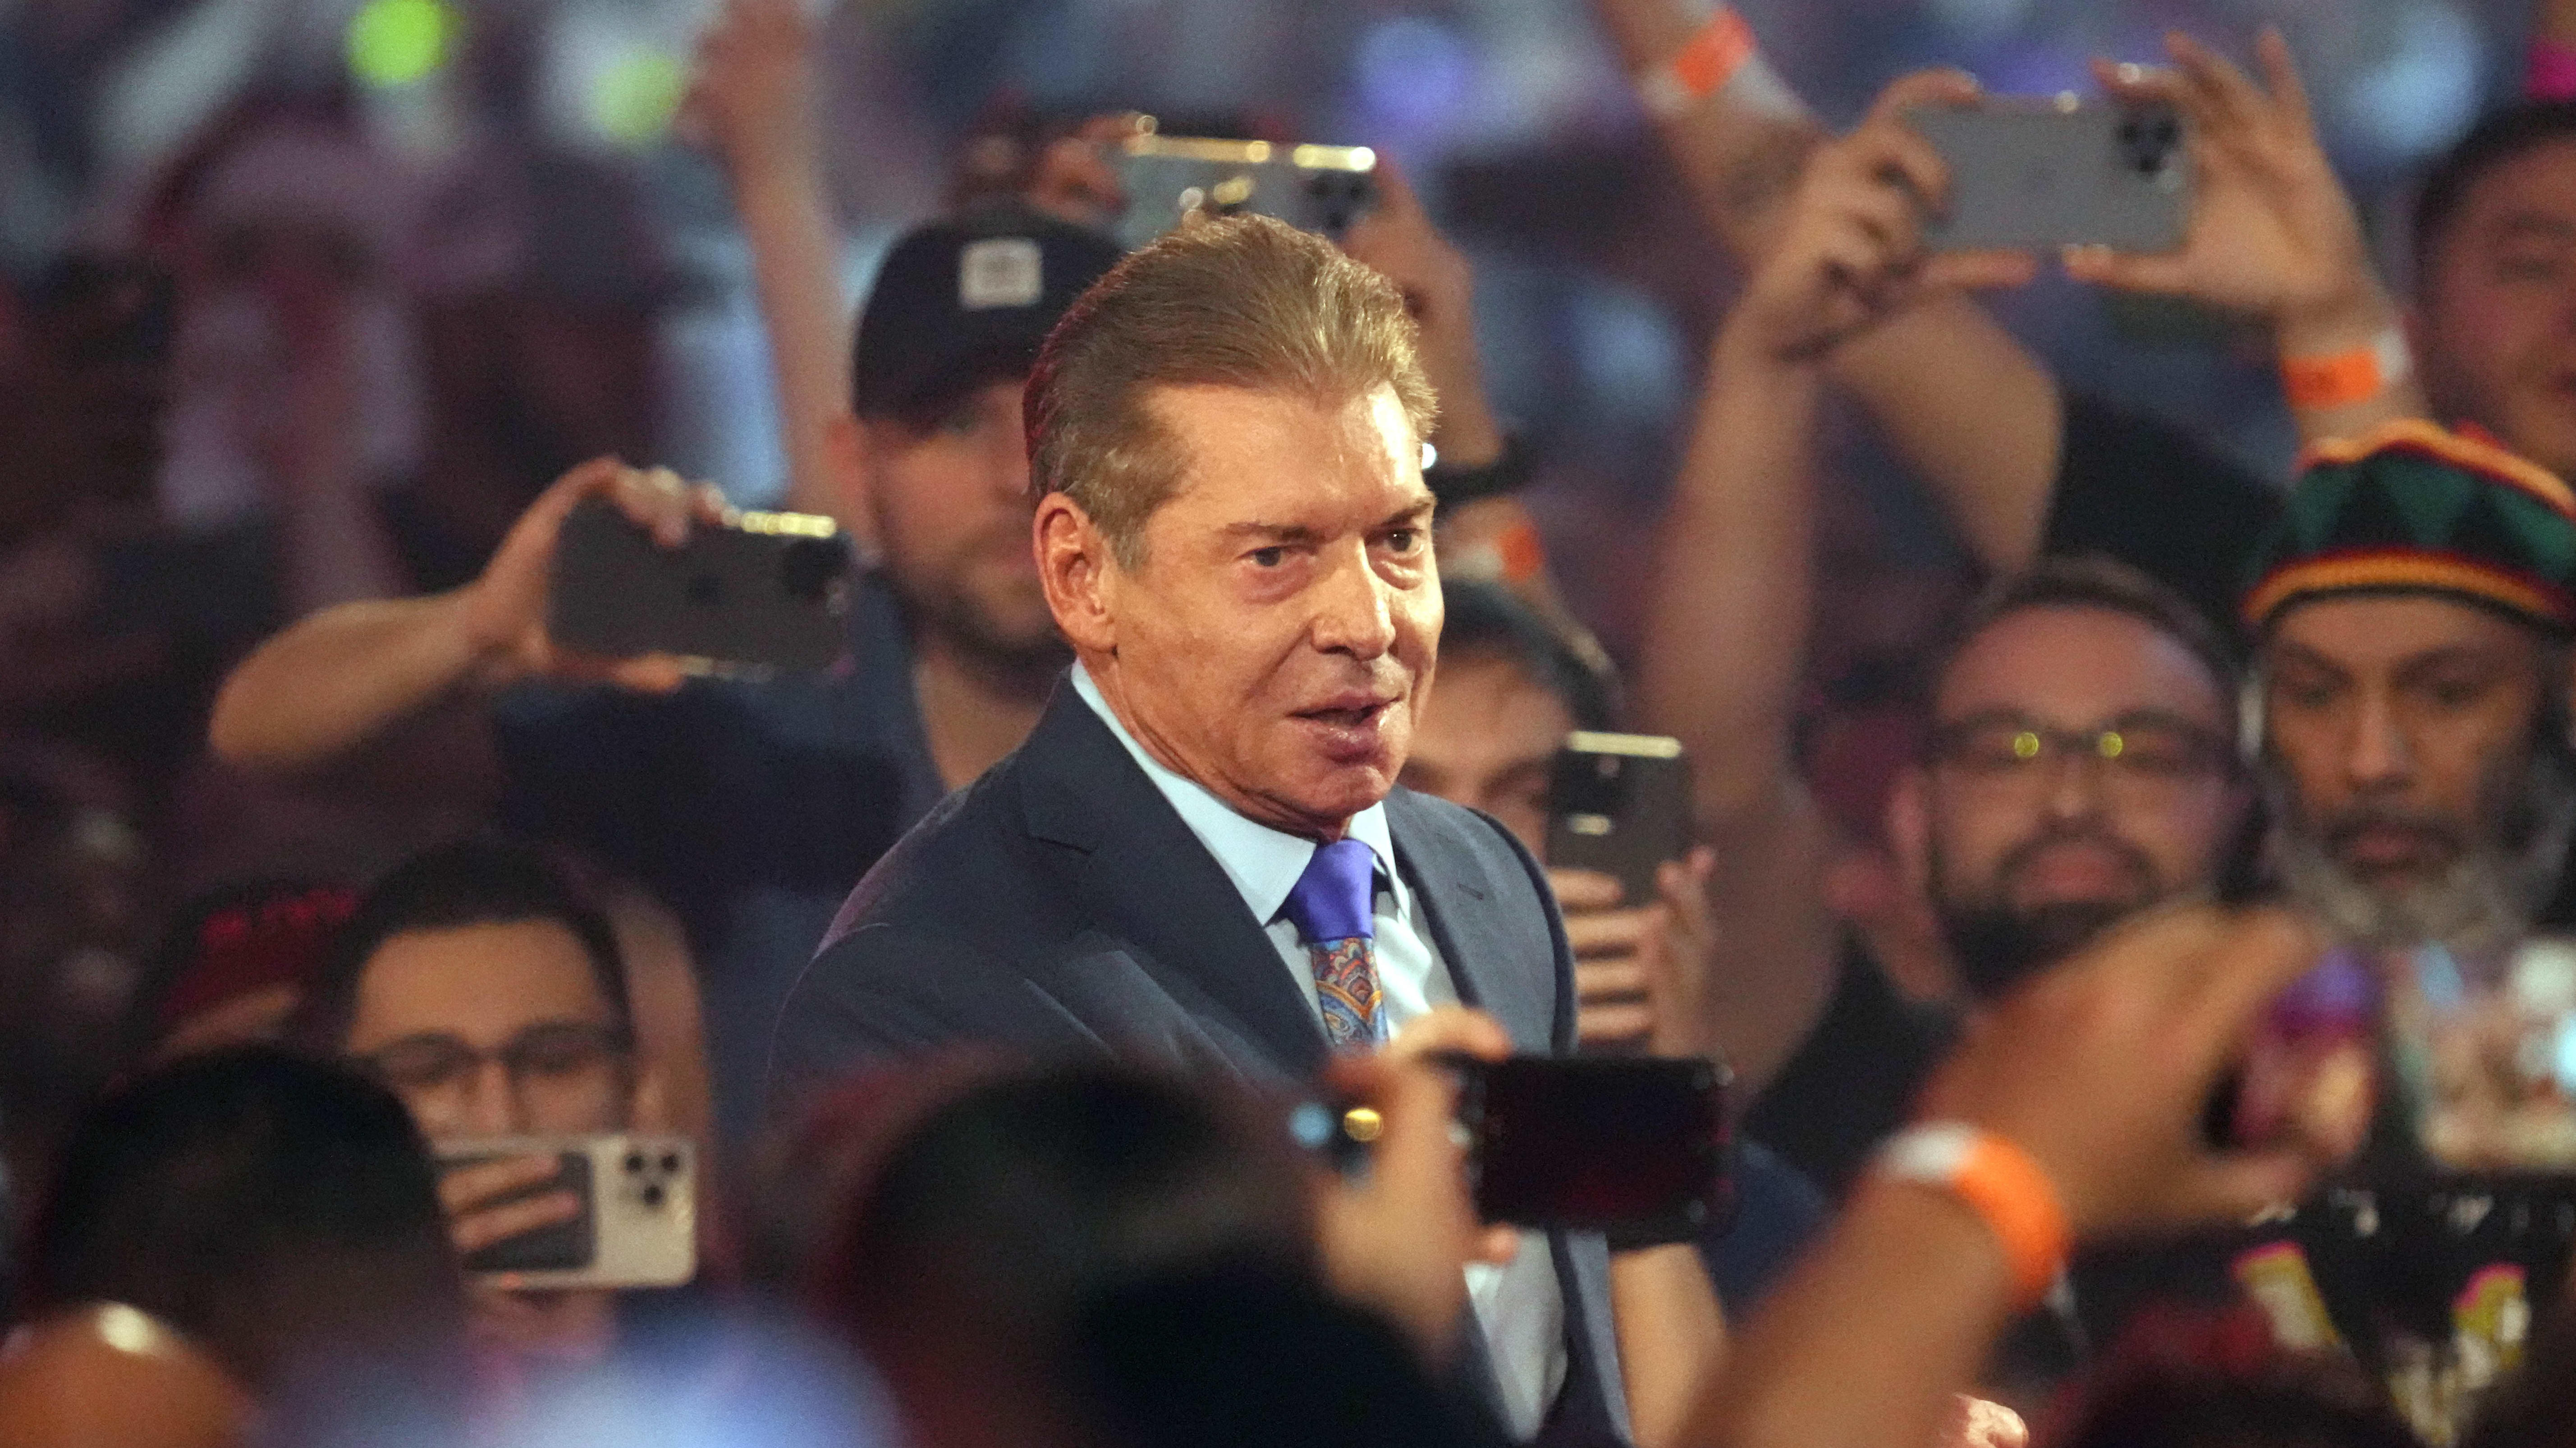 5714px x 3211px - WWE 2022: Vince McMahon announcement amid $12 million sex scandal